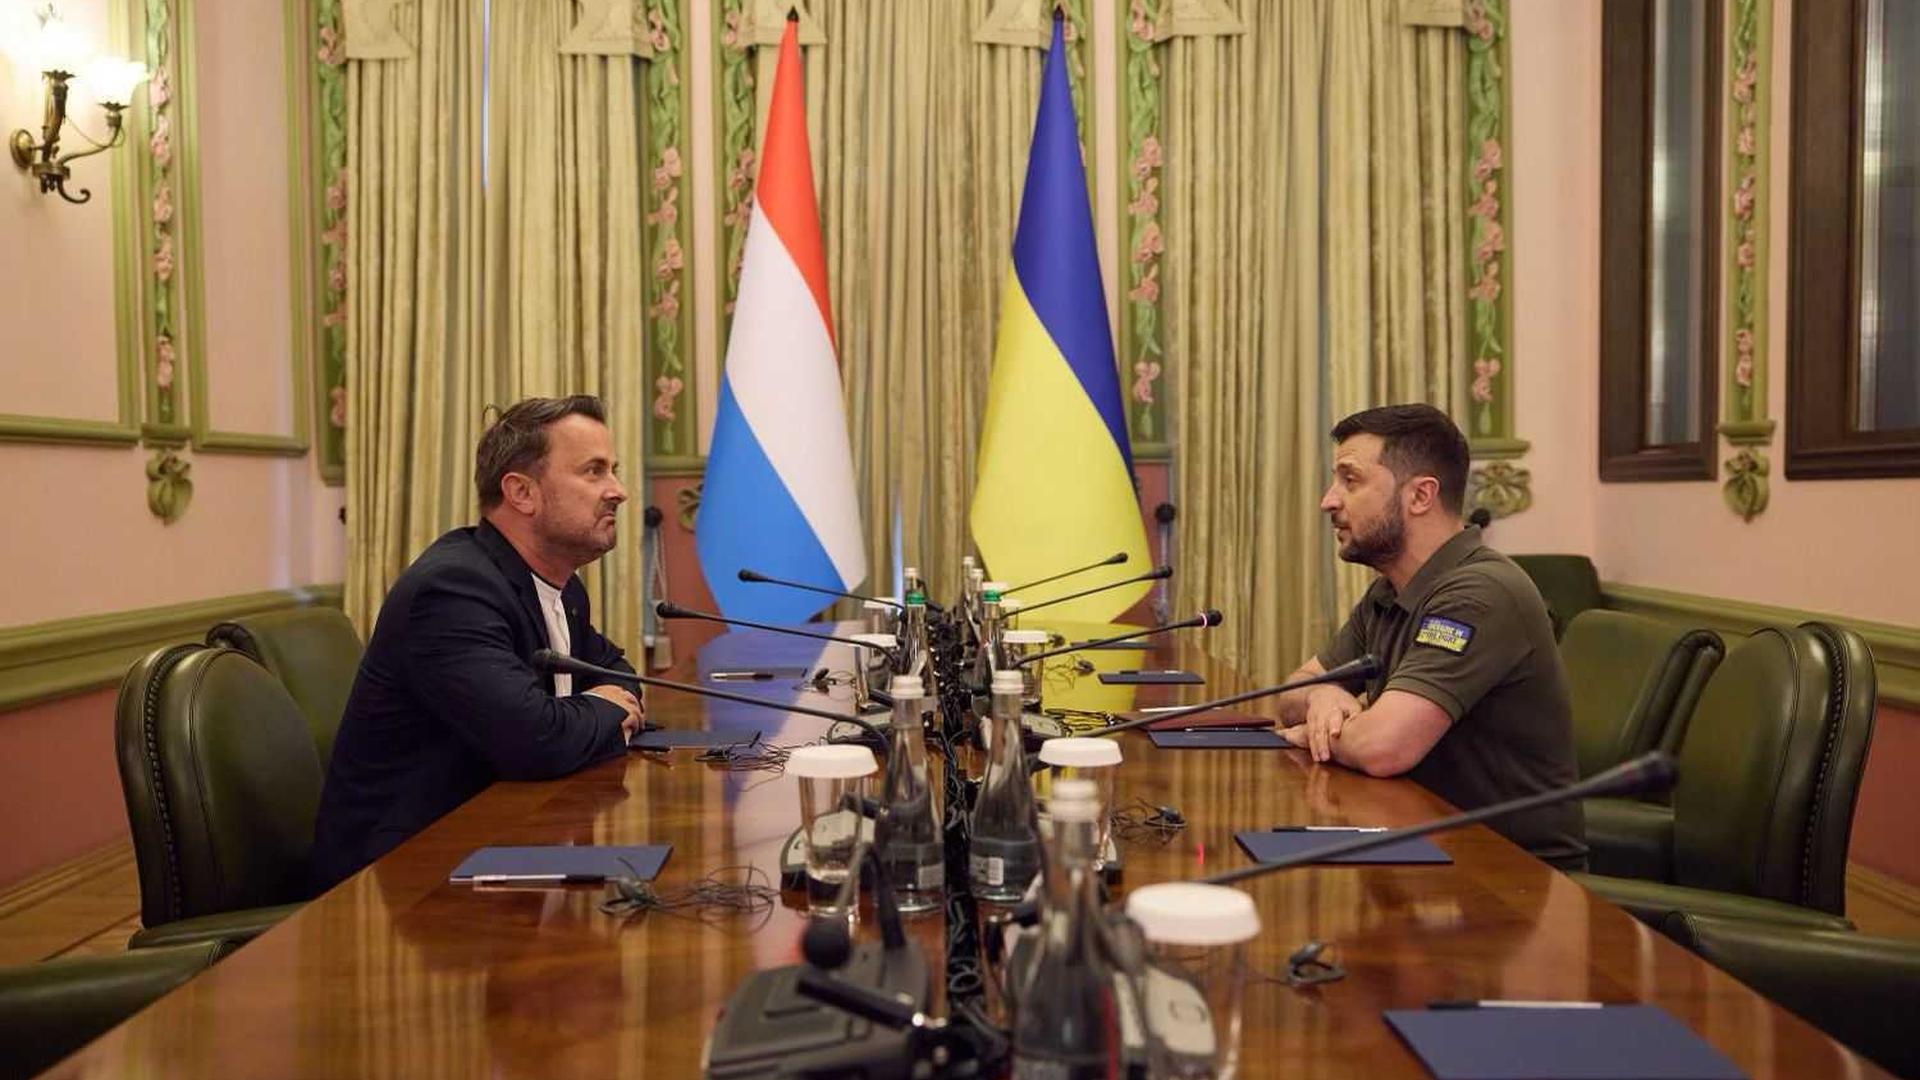 Luxembourg Prime Minister Xavier Bettel meeting Ukraine President Volodymyr Zelensky in Kyiv last month